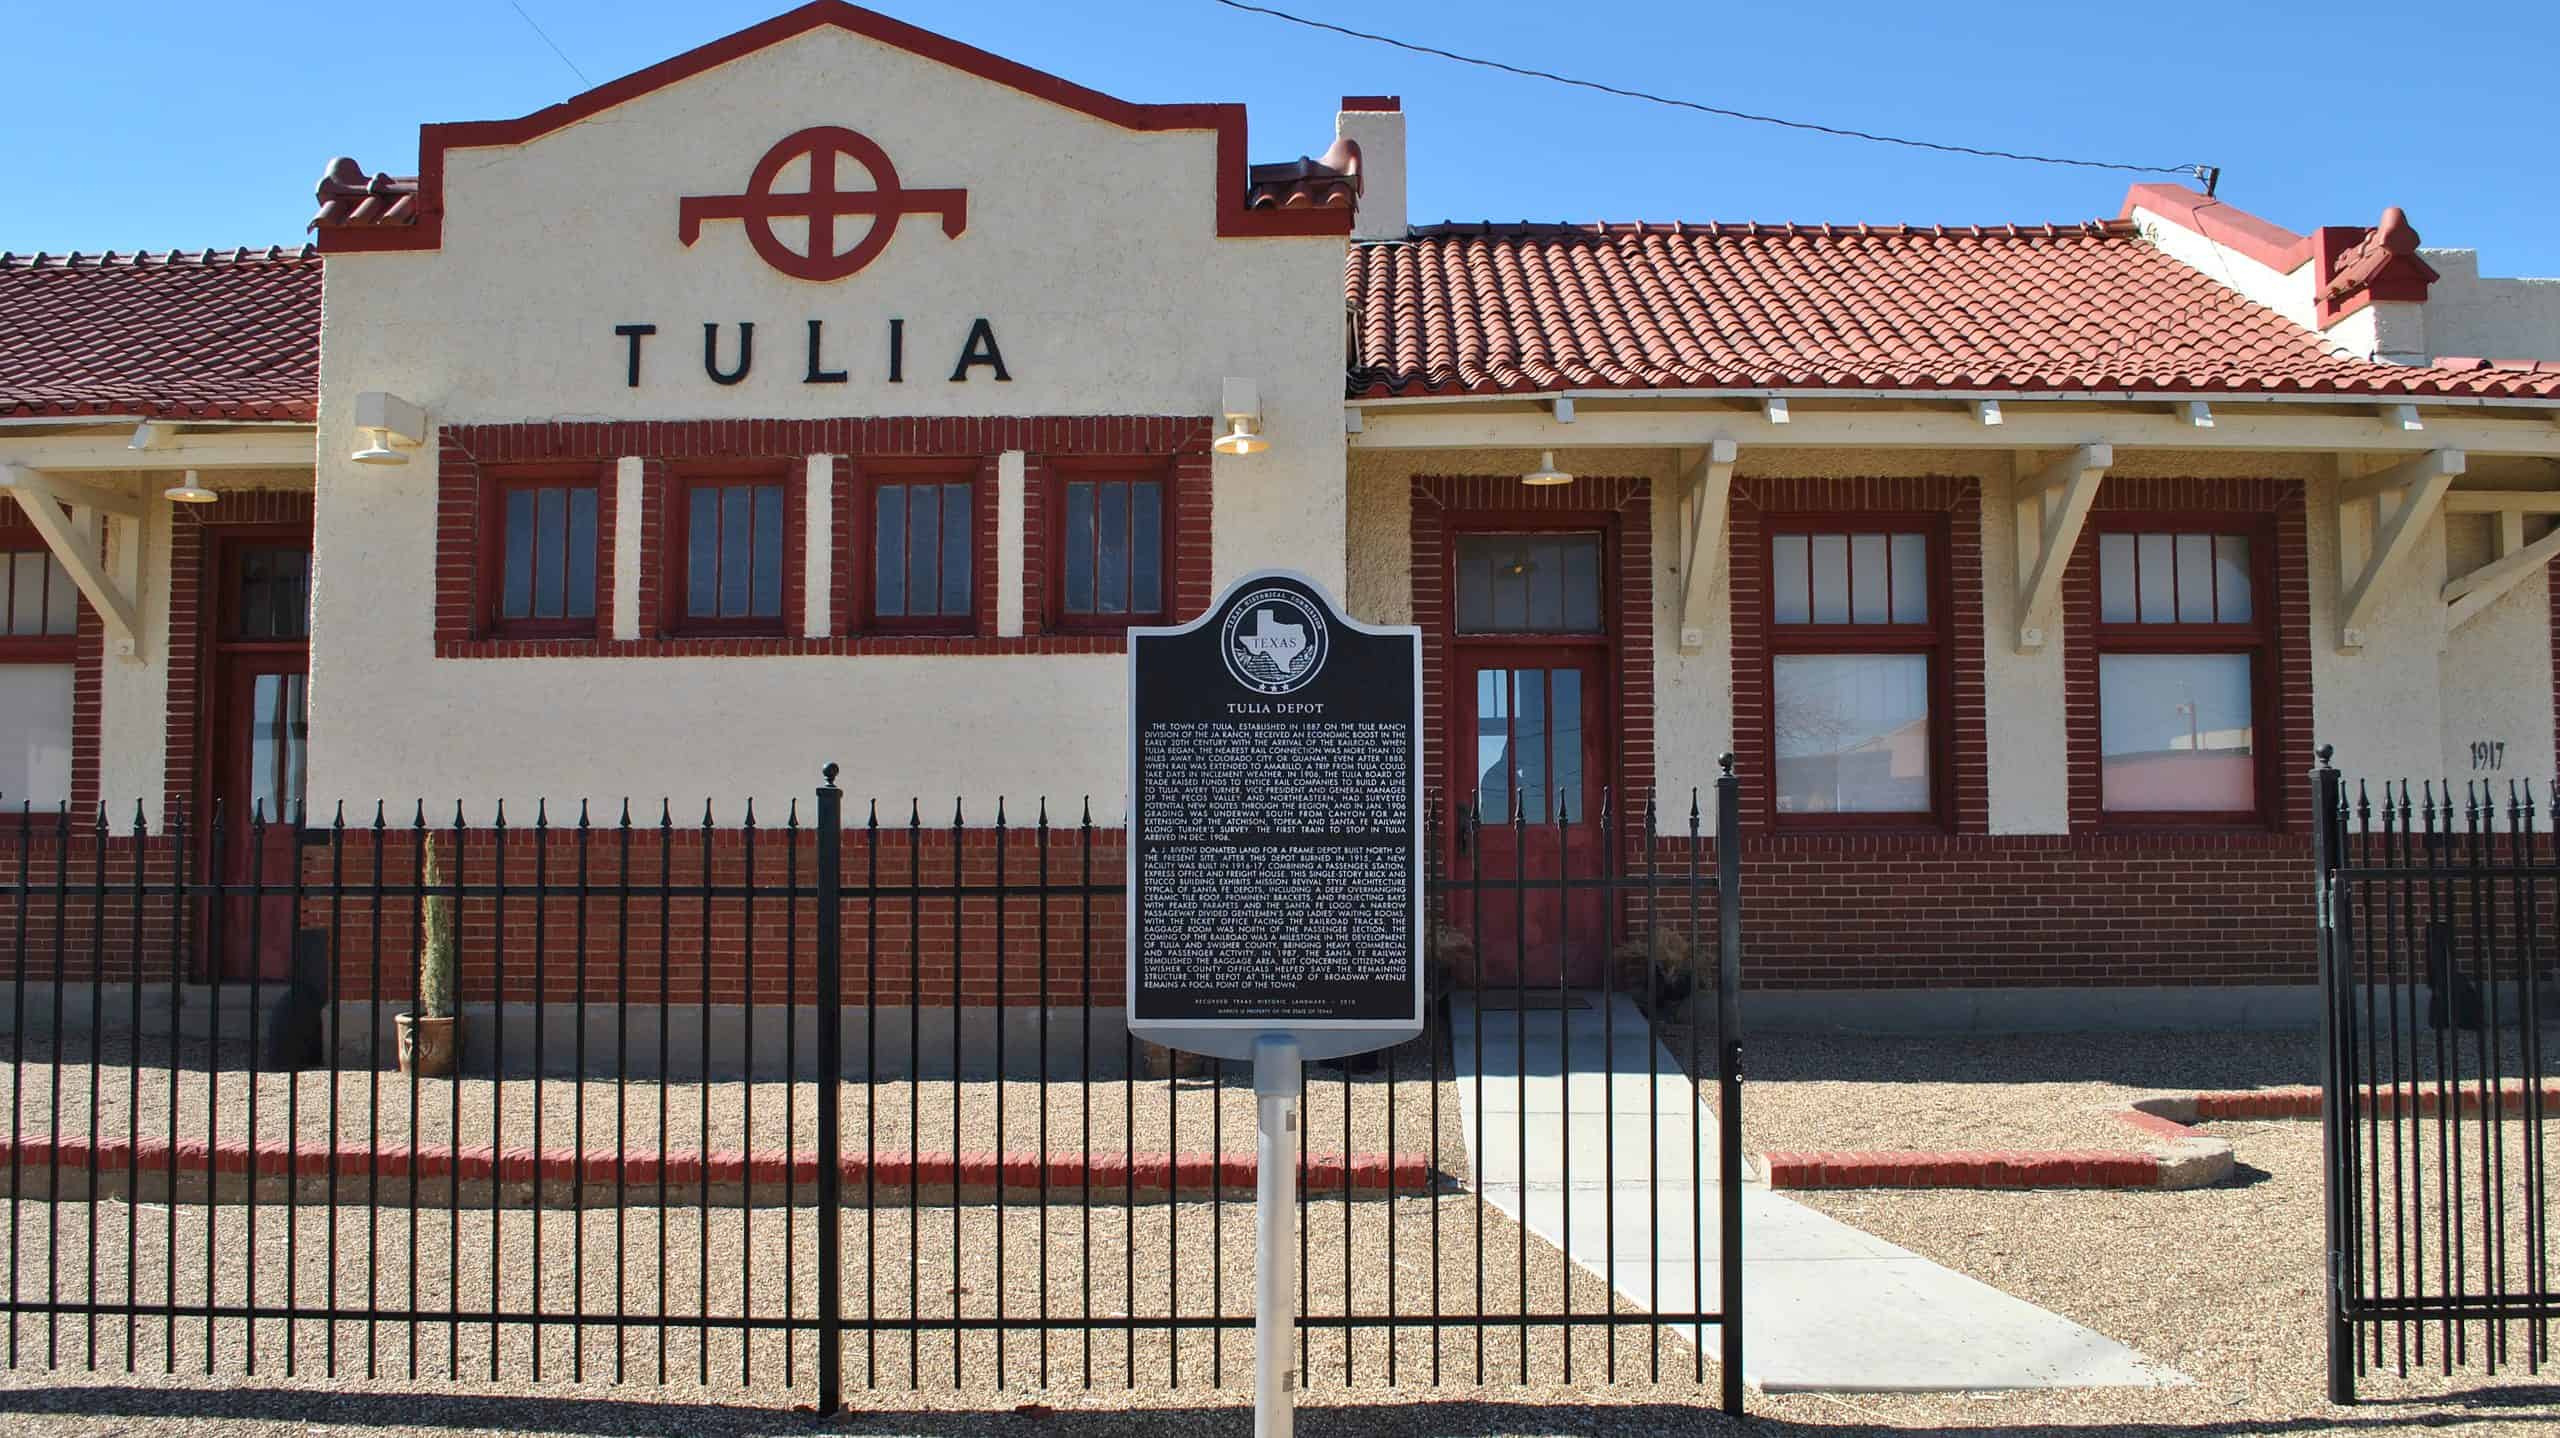 Santa Fe Railroad Depot, Tulia, Texas